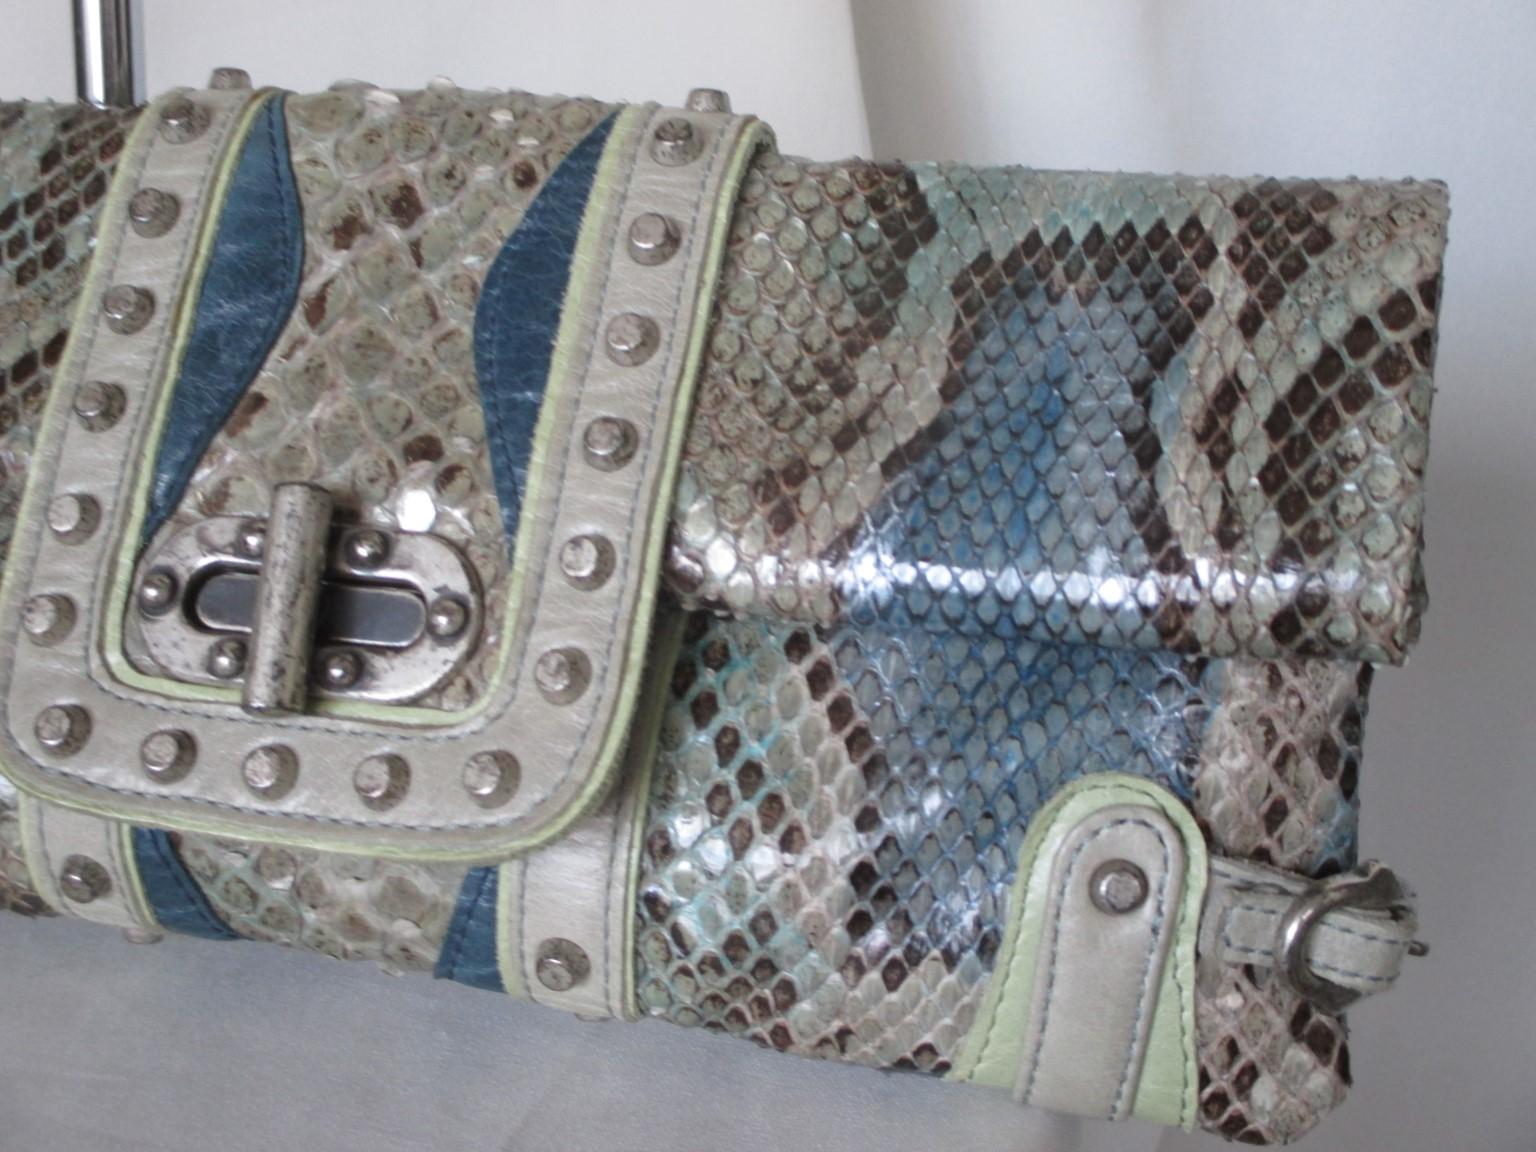 Diese einzigartige Clutch ist aus gefärbtem blau/grau/grün/silbernem Pythonleder gefertigt.

Wir bieten mehr Luxus-Taschen, Mode und Pelze, sehen Sie unsere Frontstore.

Einzelheiten:
Vollständig gefüttert 
Mit Fransen und abnehmbarem